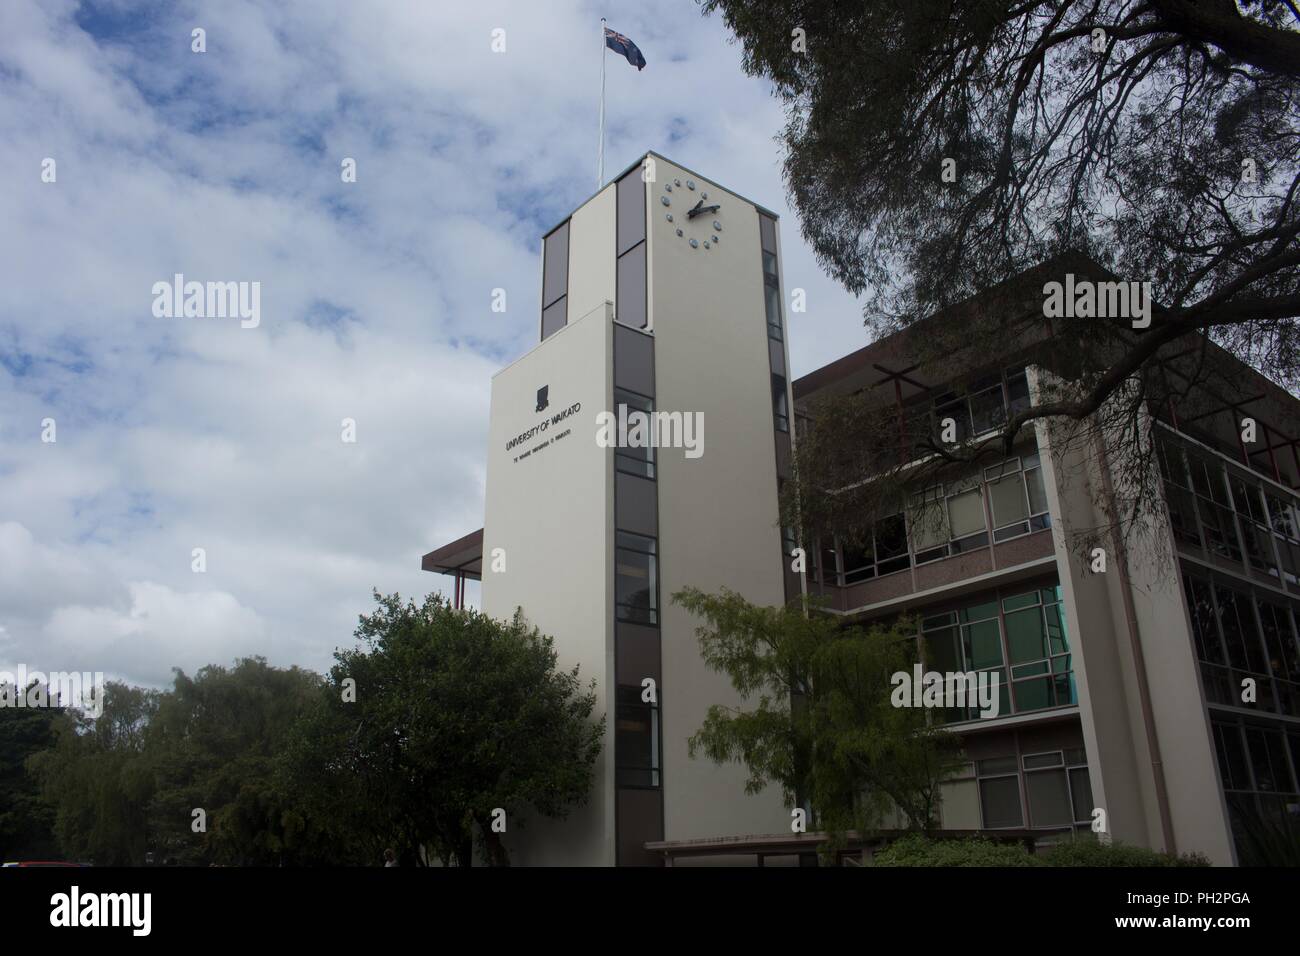 Tour de l'horloge et bâtiments du campus de l'Université de Waikato à Hamilton, Nouvelle-Zélande sur l'image, Novembre, 2017. () Banque D'Images